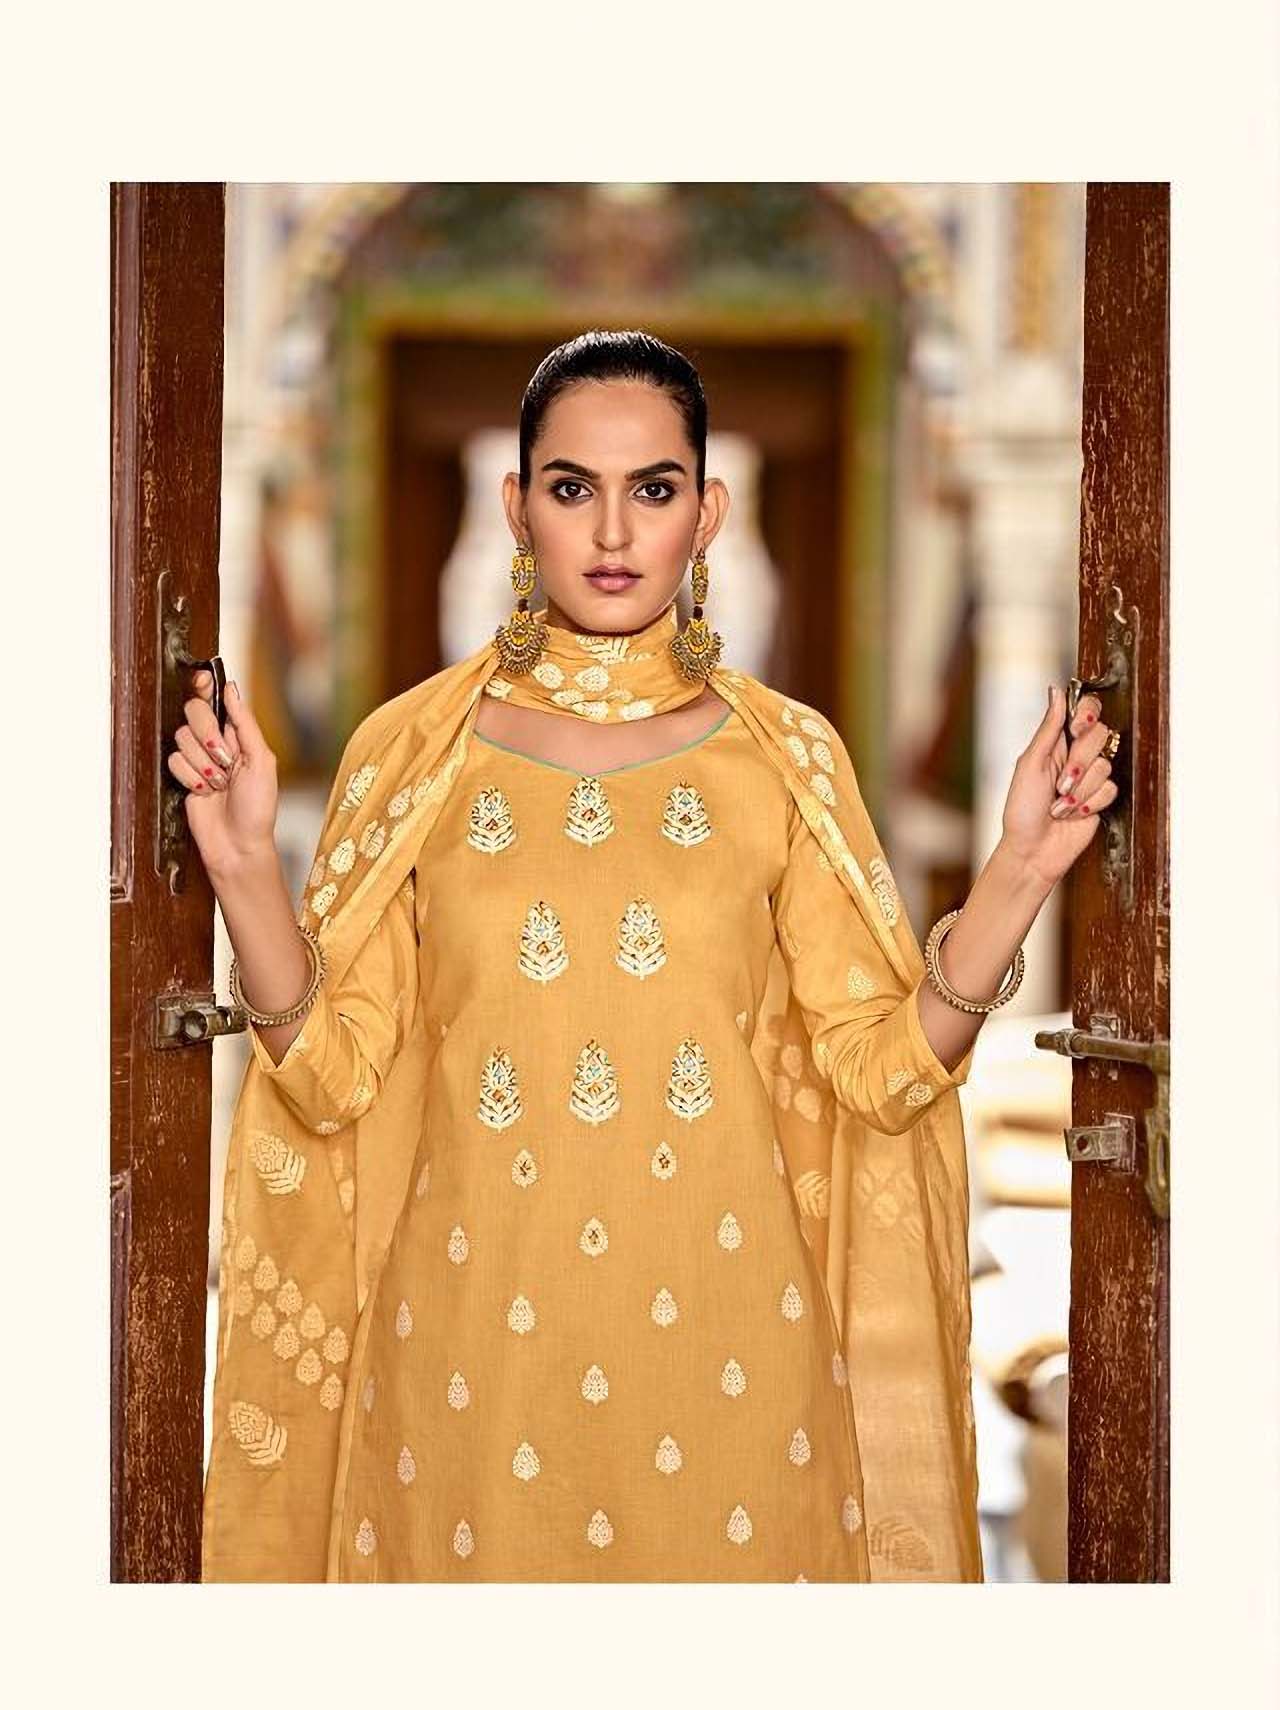 Latest Pakistani Cotton Suits Collection | Latest Pakistani Dress Designs  2022 - Pakistani Dresses